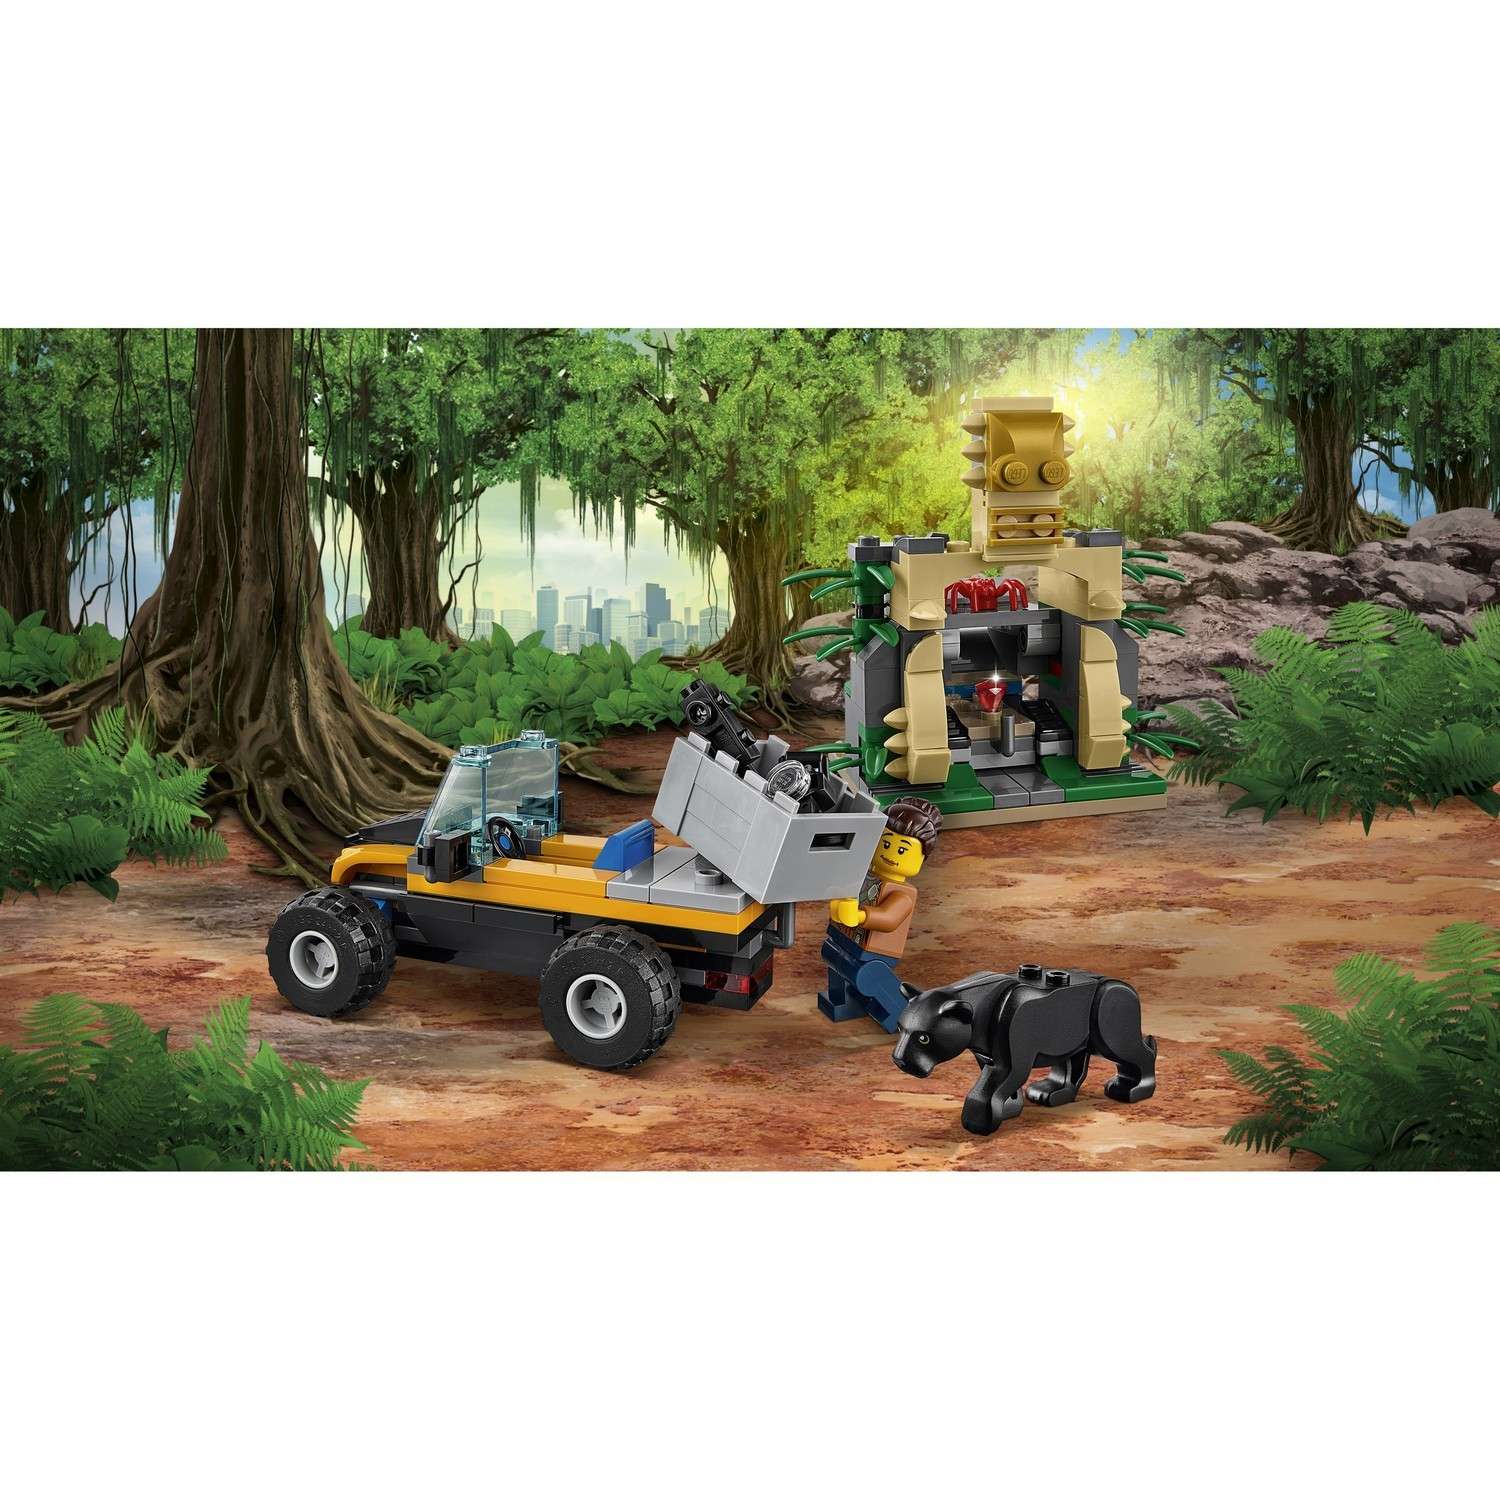 Конструктор LEGO City Jungle Explorers Миссия "Исследование джунглей" (60159) - фото 6